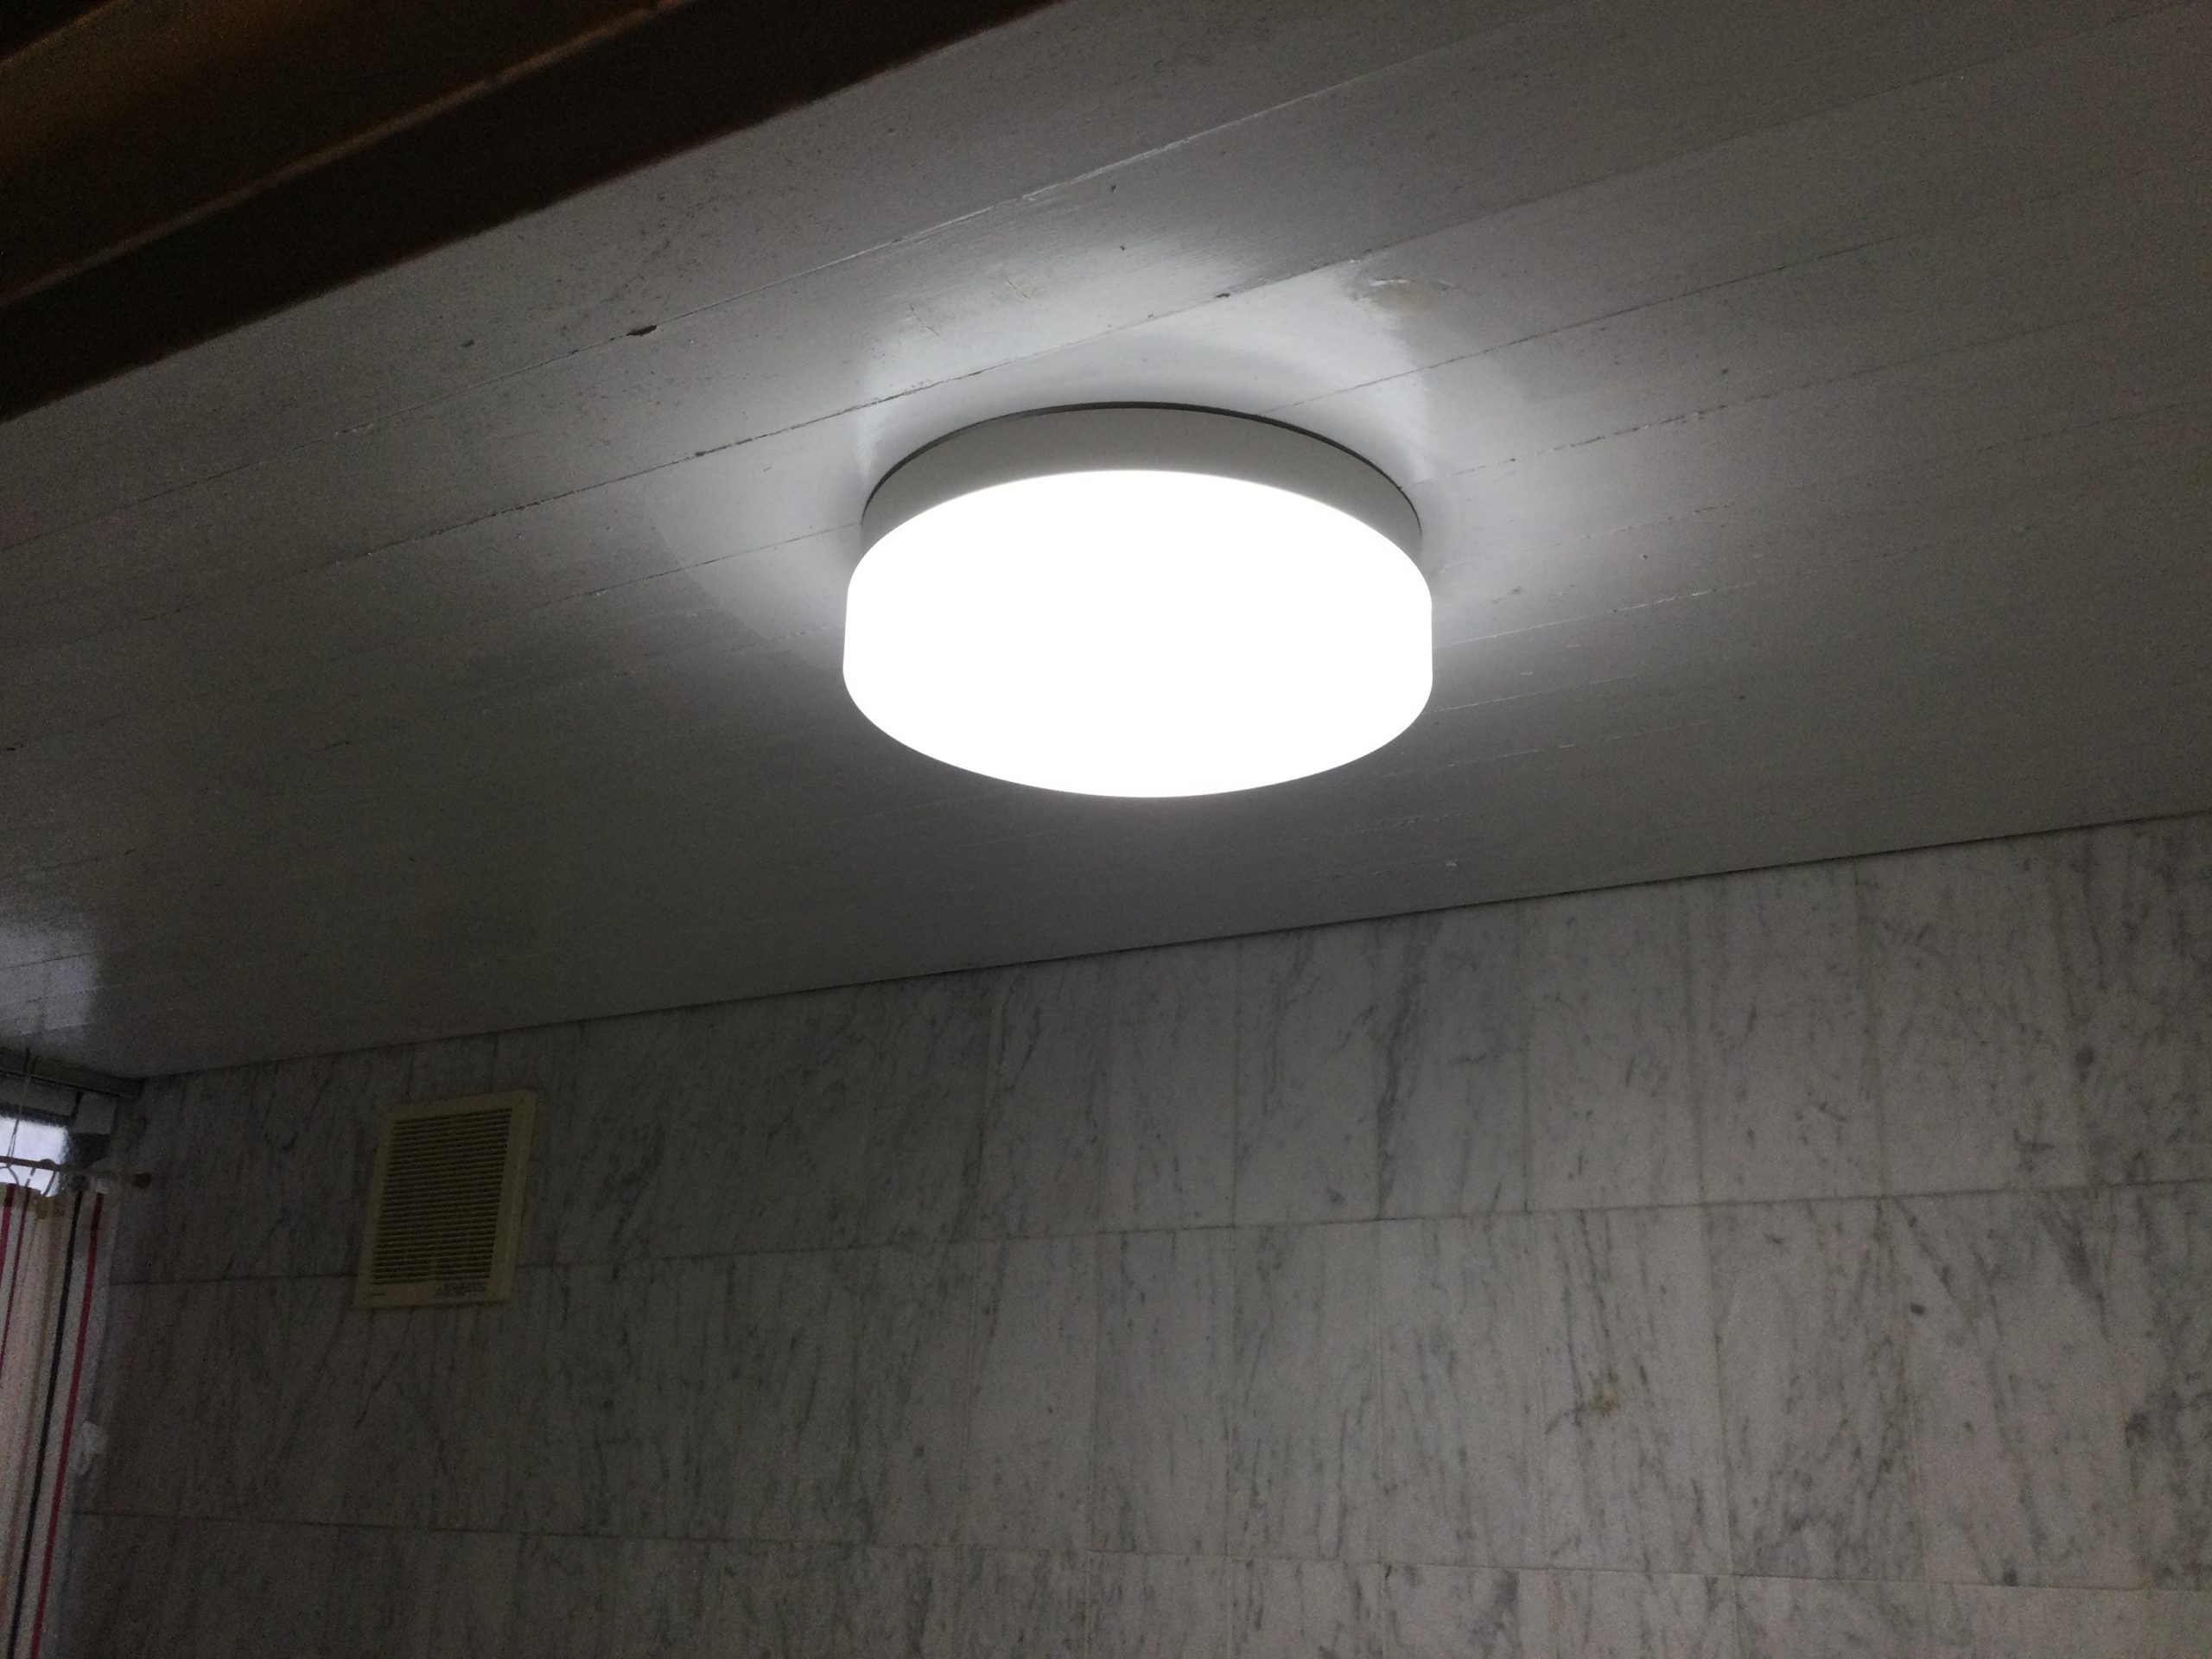 浴室の照明器具をLED製のものに交換したい 工事編（東京都豊島区のお客様より） – てるくにでんきの毎日は照明器具の毎日